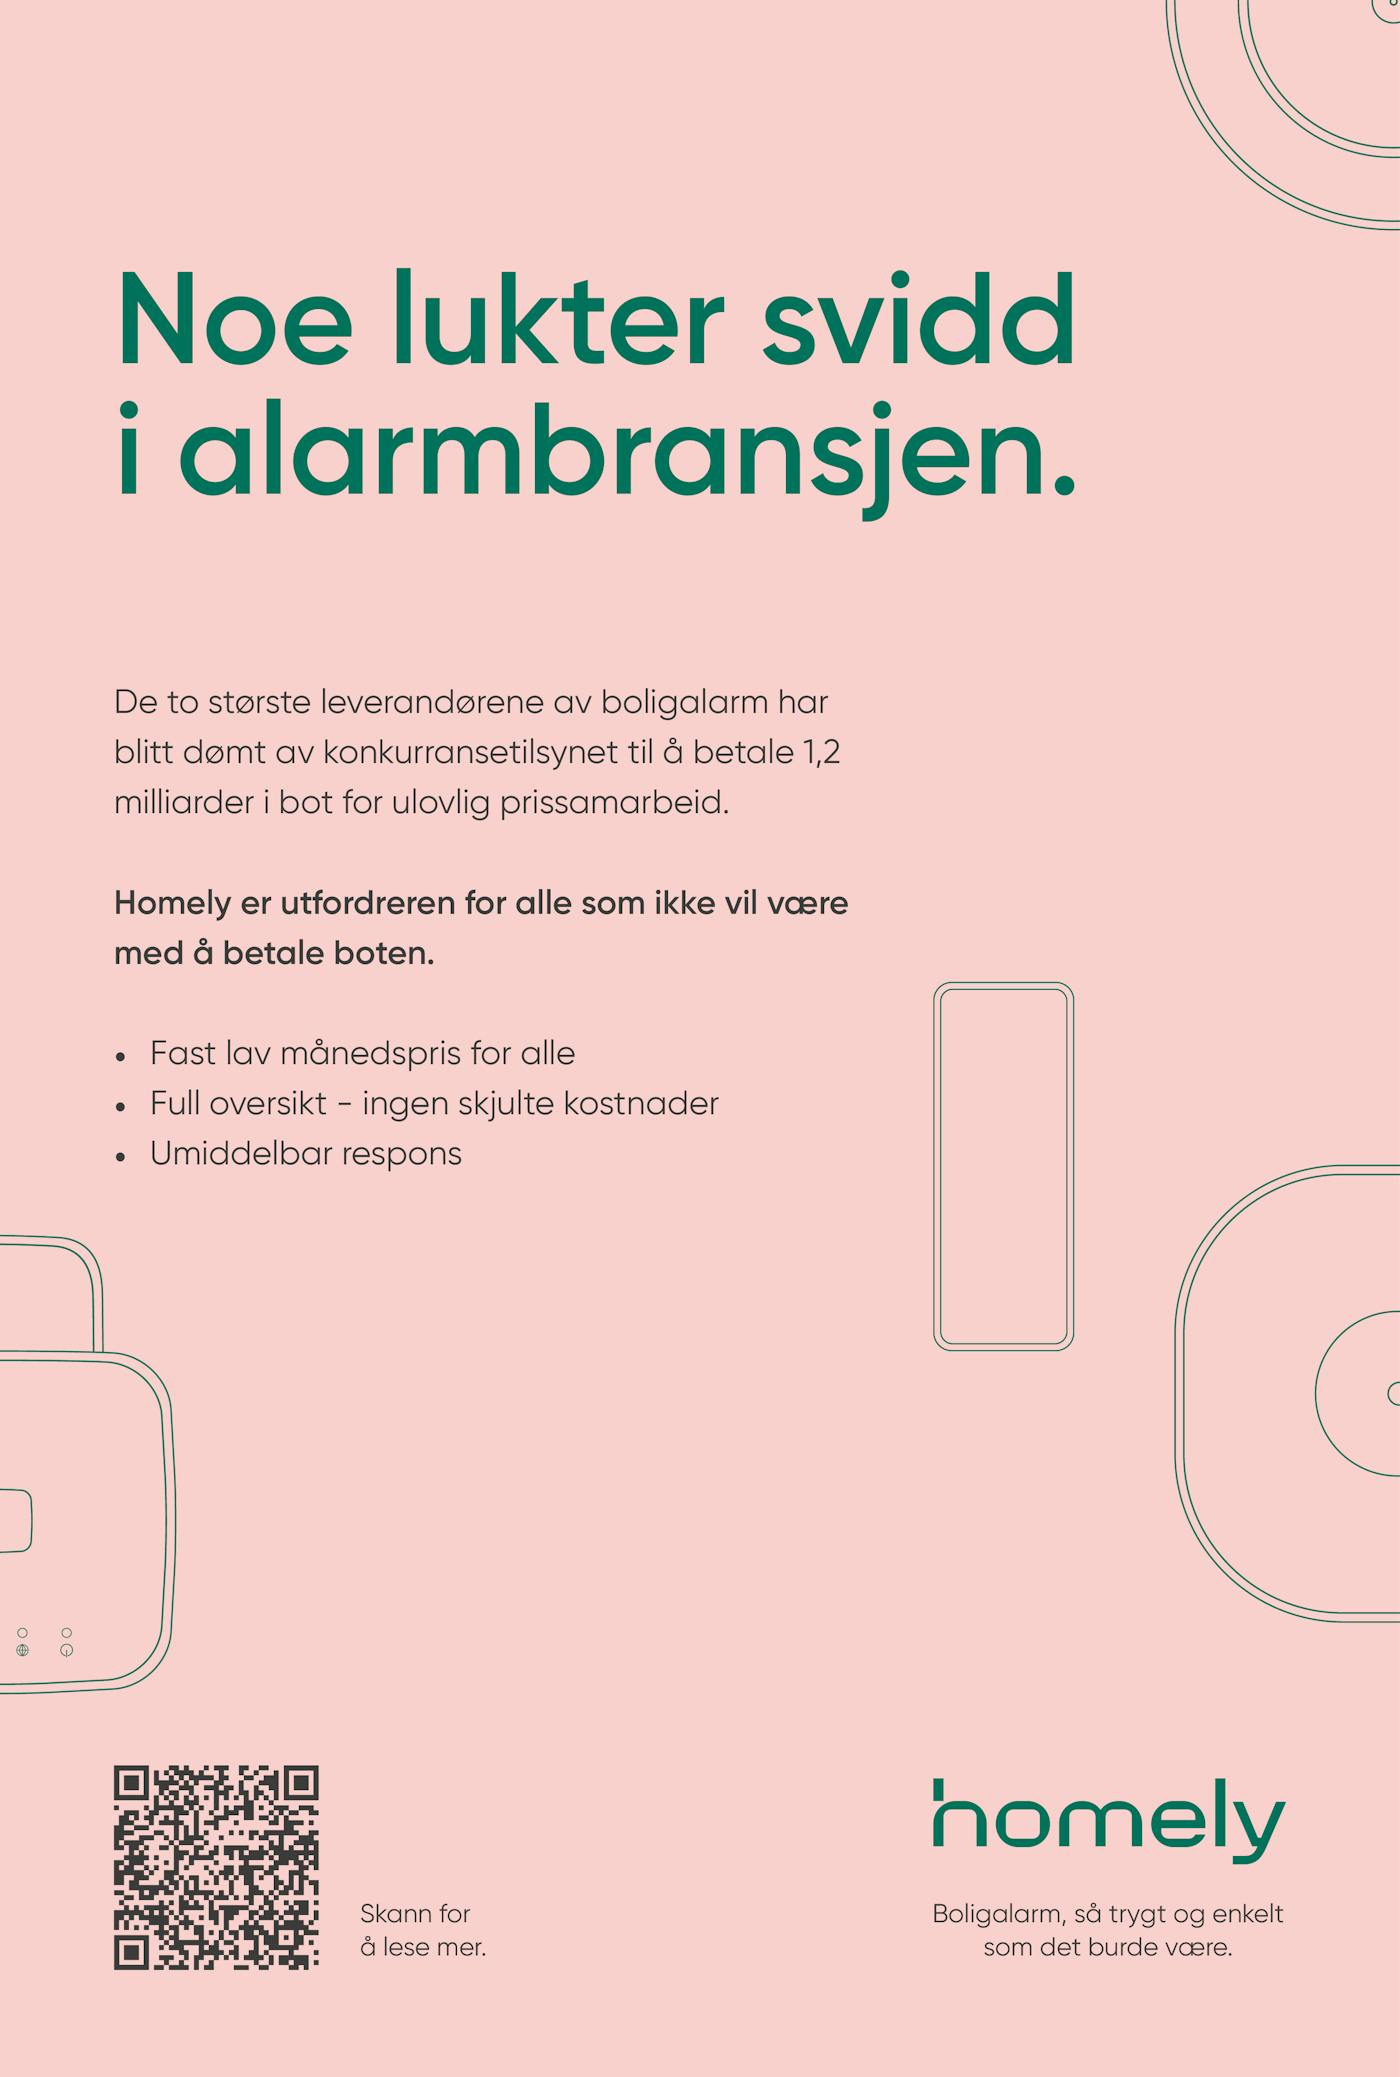 Homely Print Aftenposten 246x365